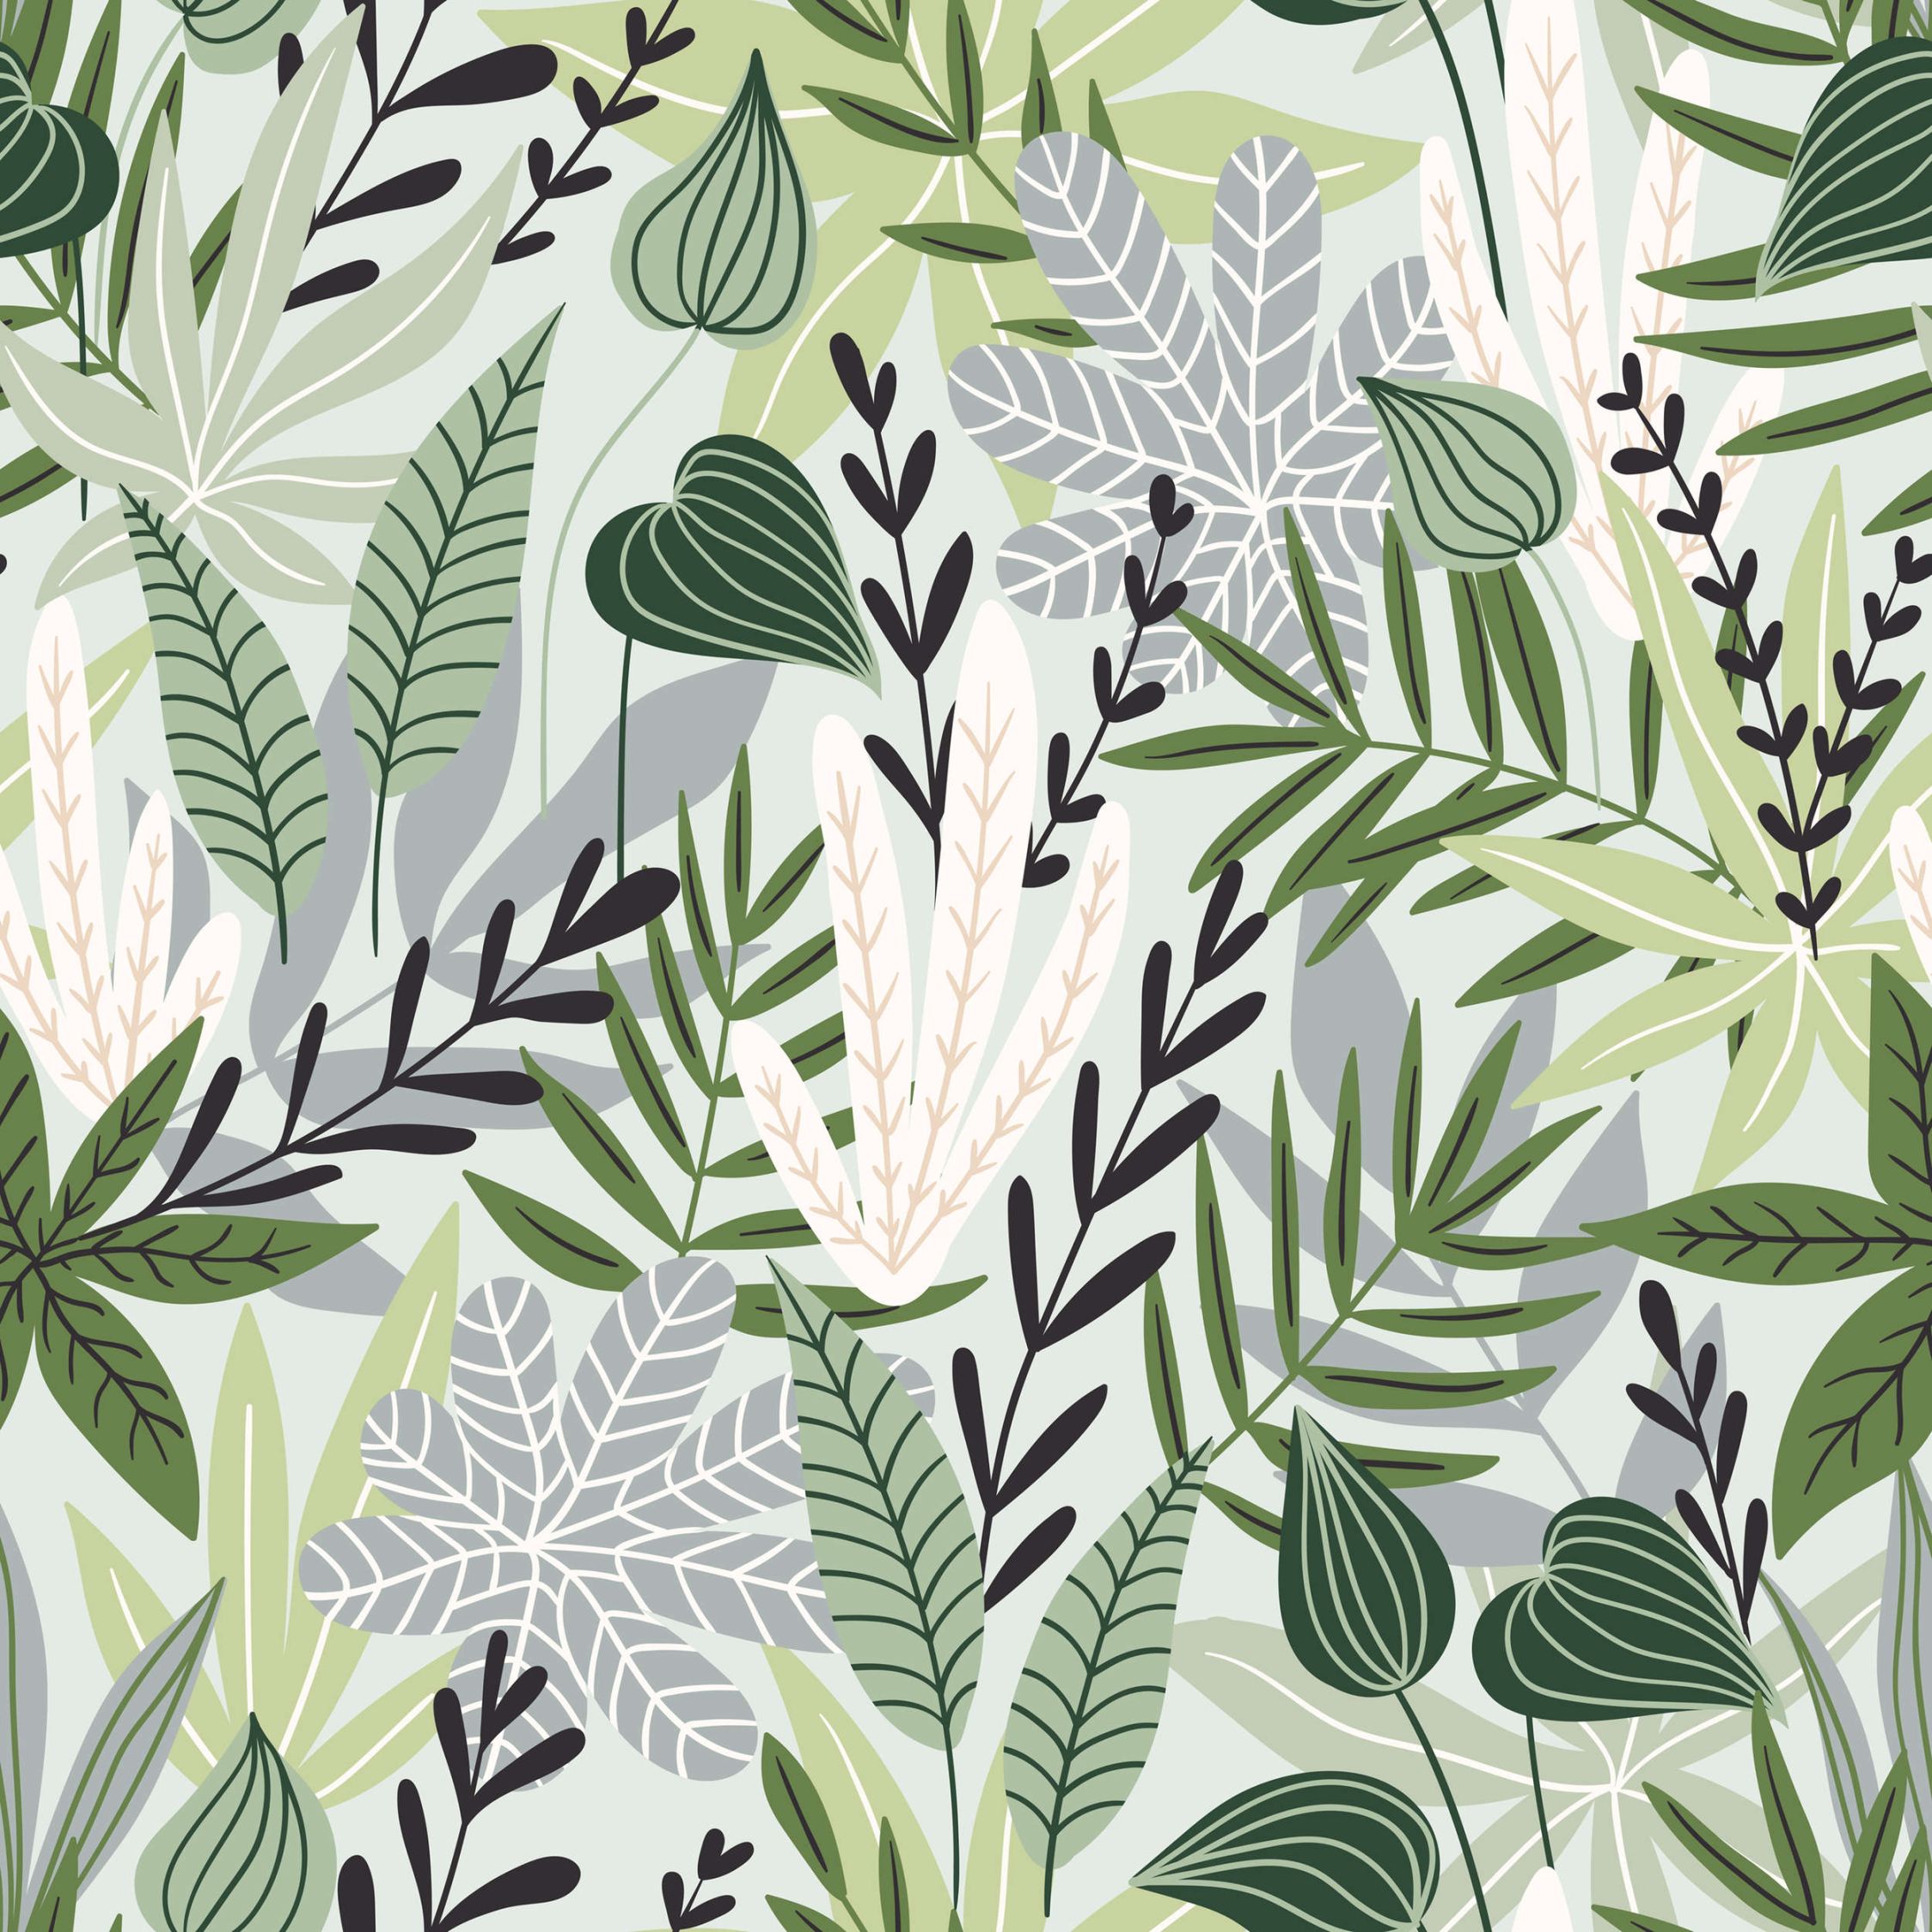             Digital behang Bladeren en grassen in komische stijl - Glad & mat vlies
        